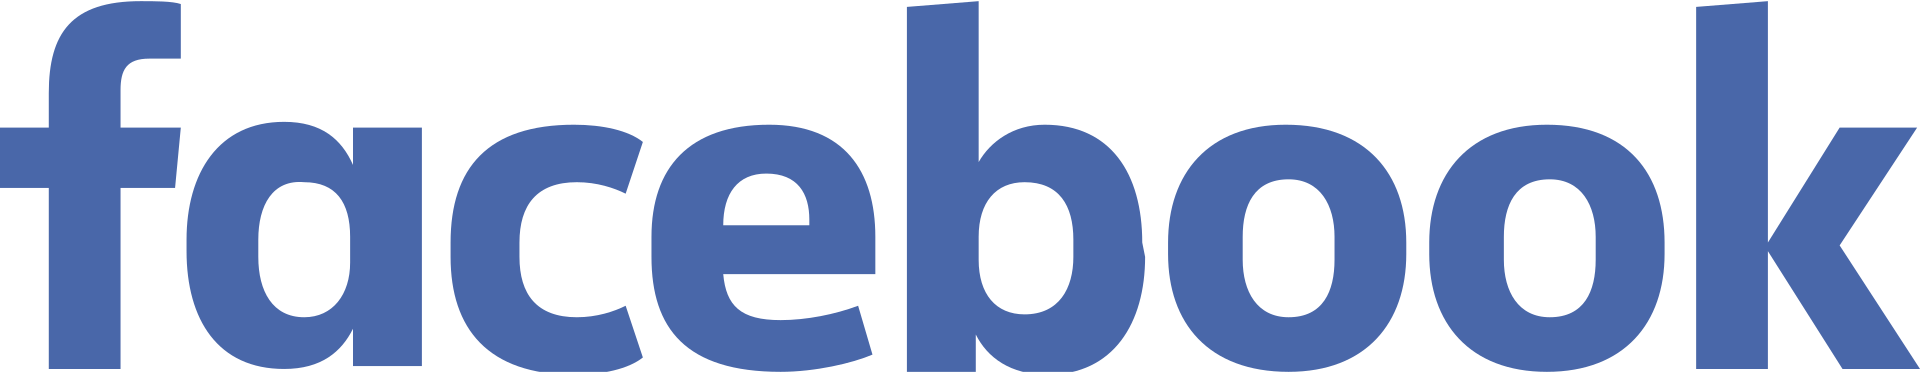 Facebook_Logo_(2015)_light.svg